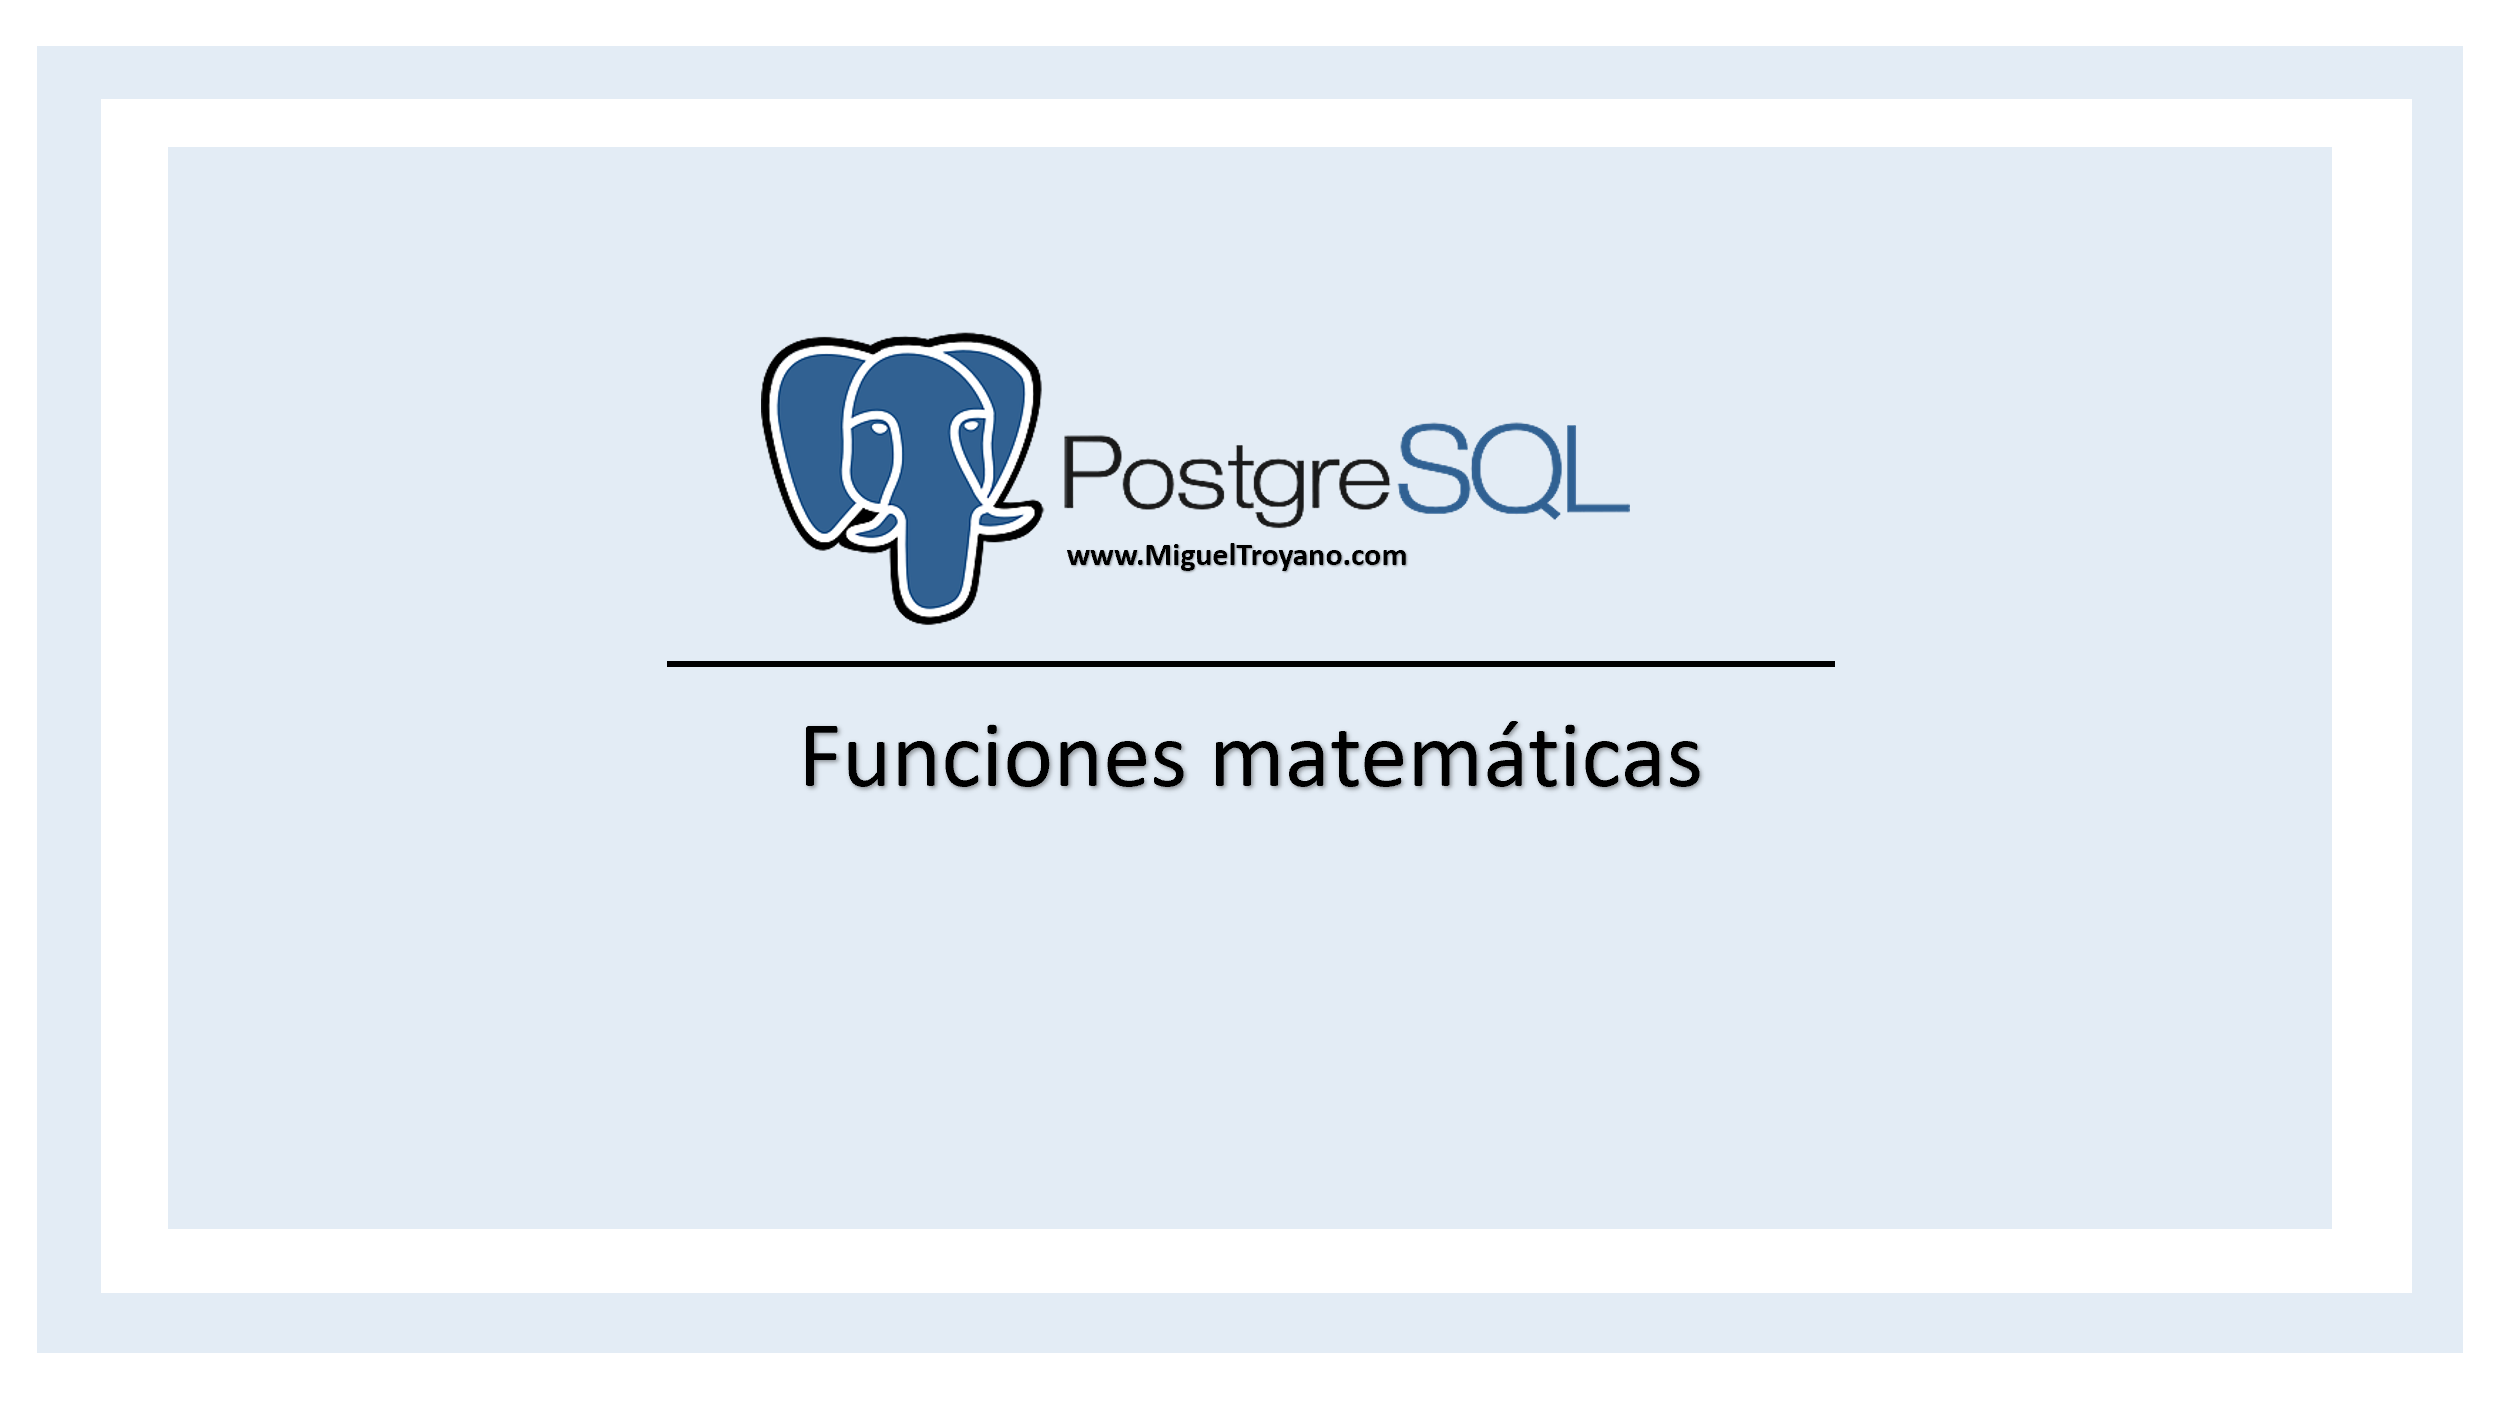 Funciones matemáticas en PostgreSQL